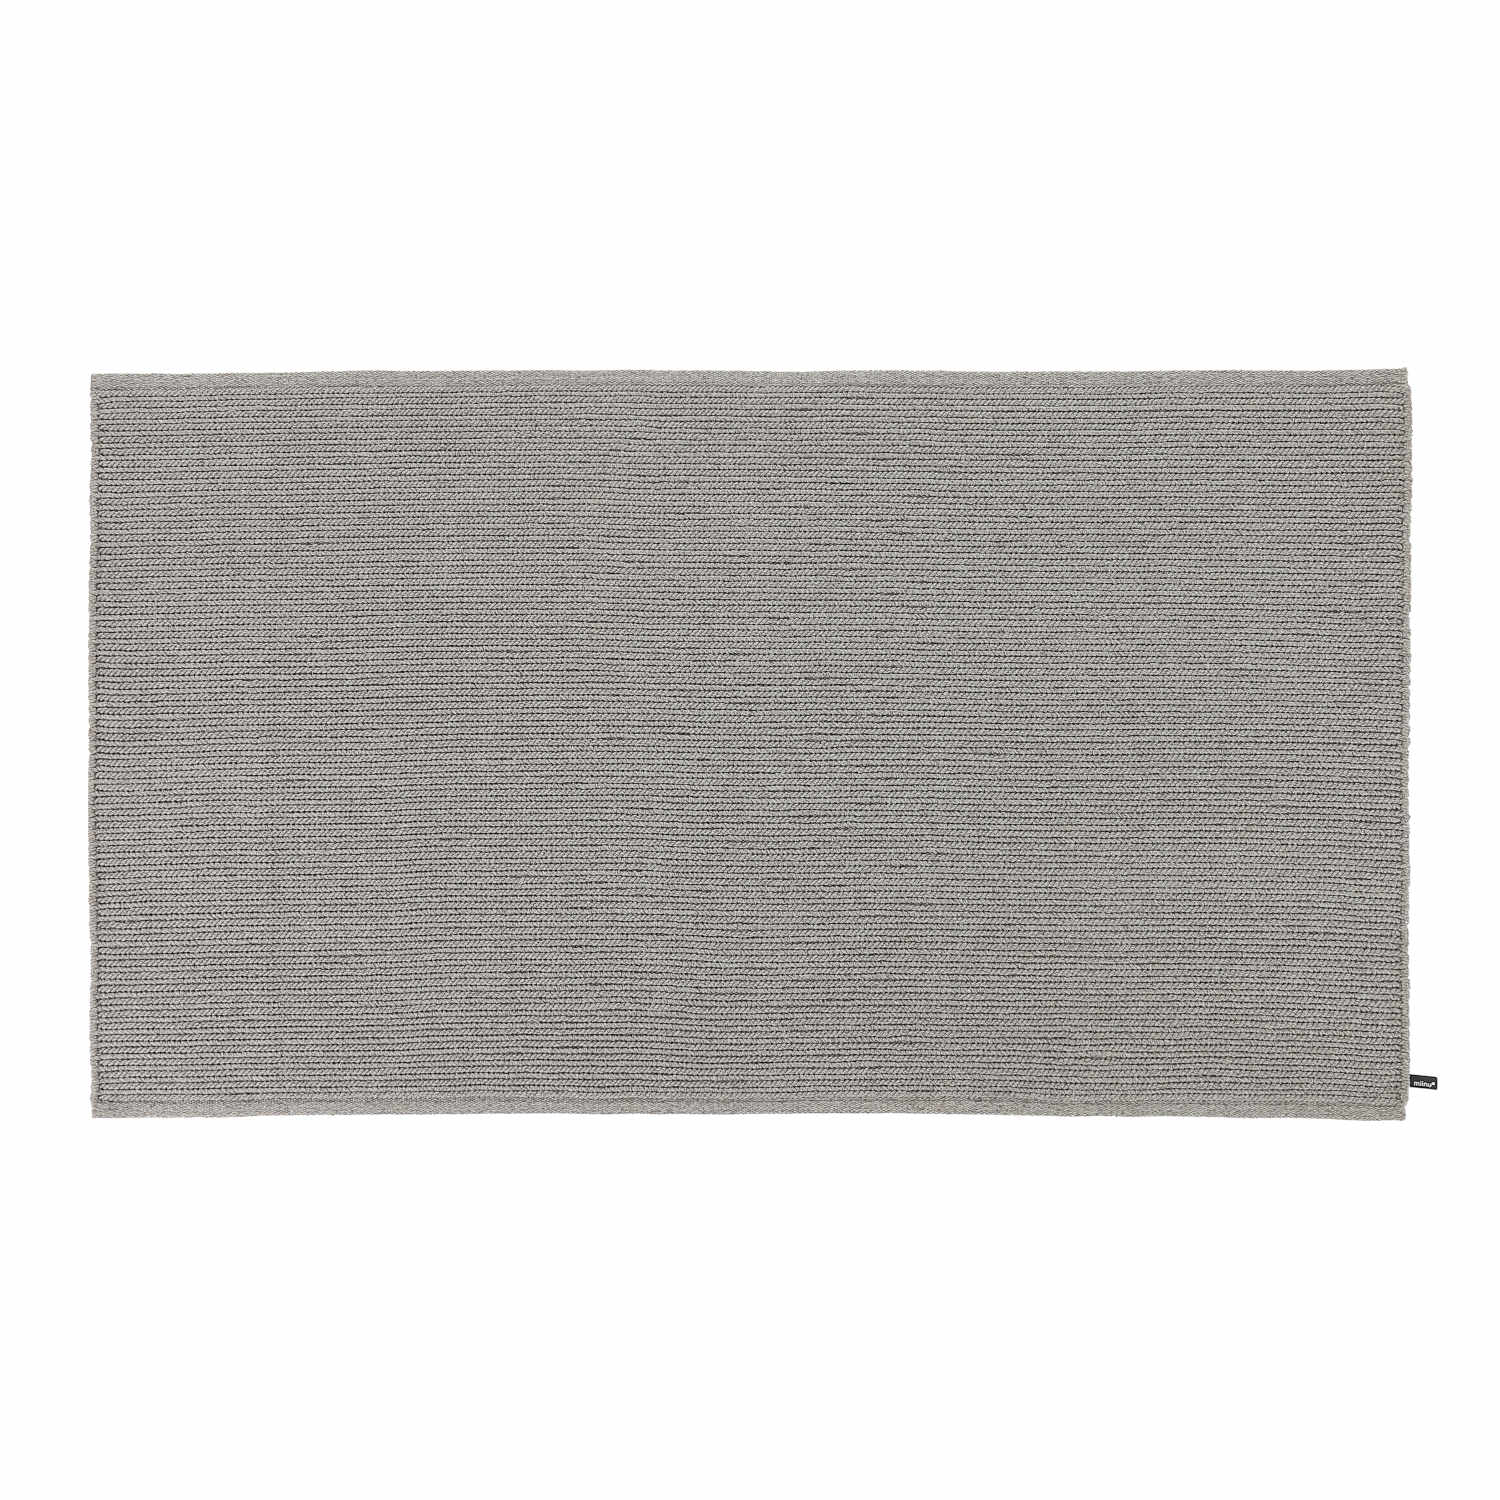 AeroOne Vol. I Outdoor Teppich, Grösse 170 x 240 cm, Farbe gray almond von miinu